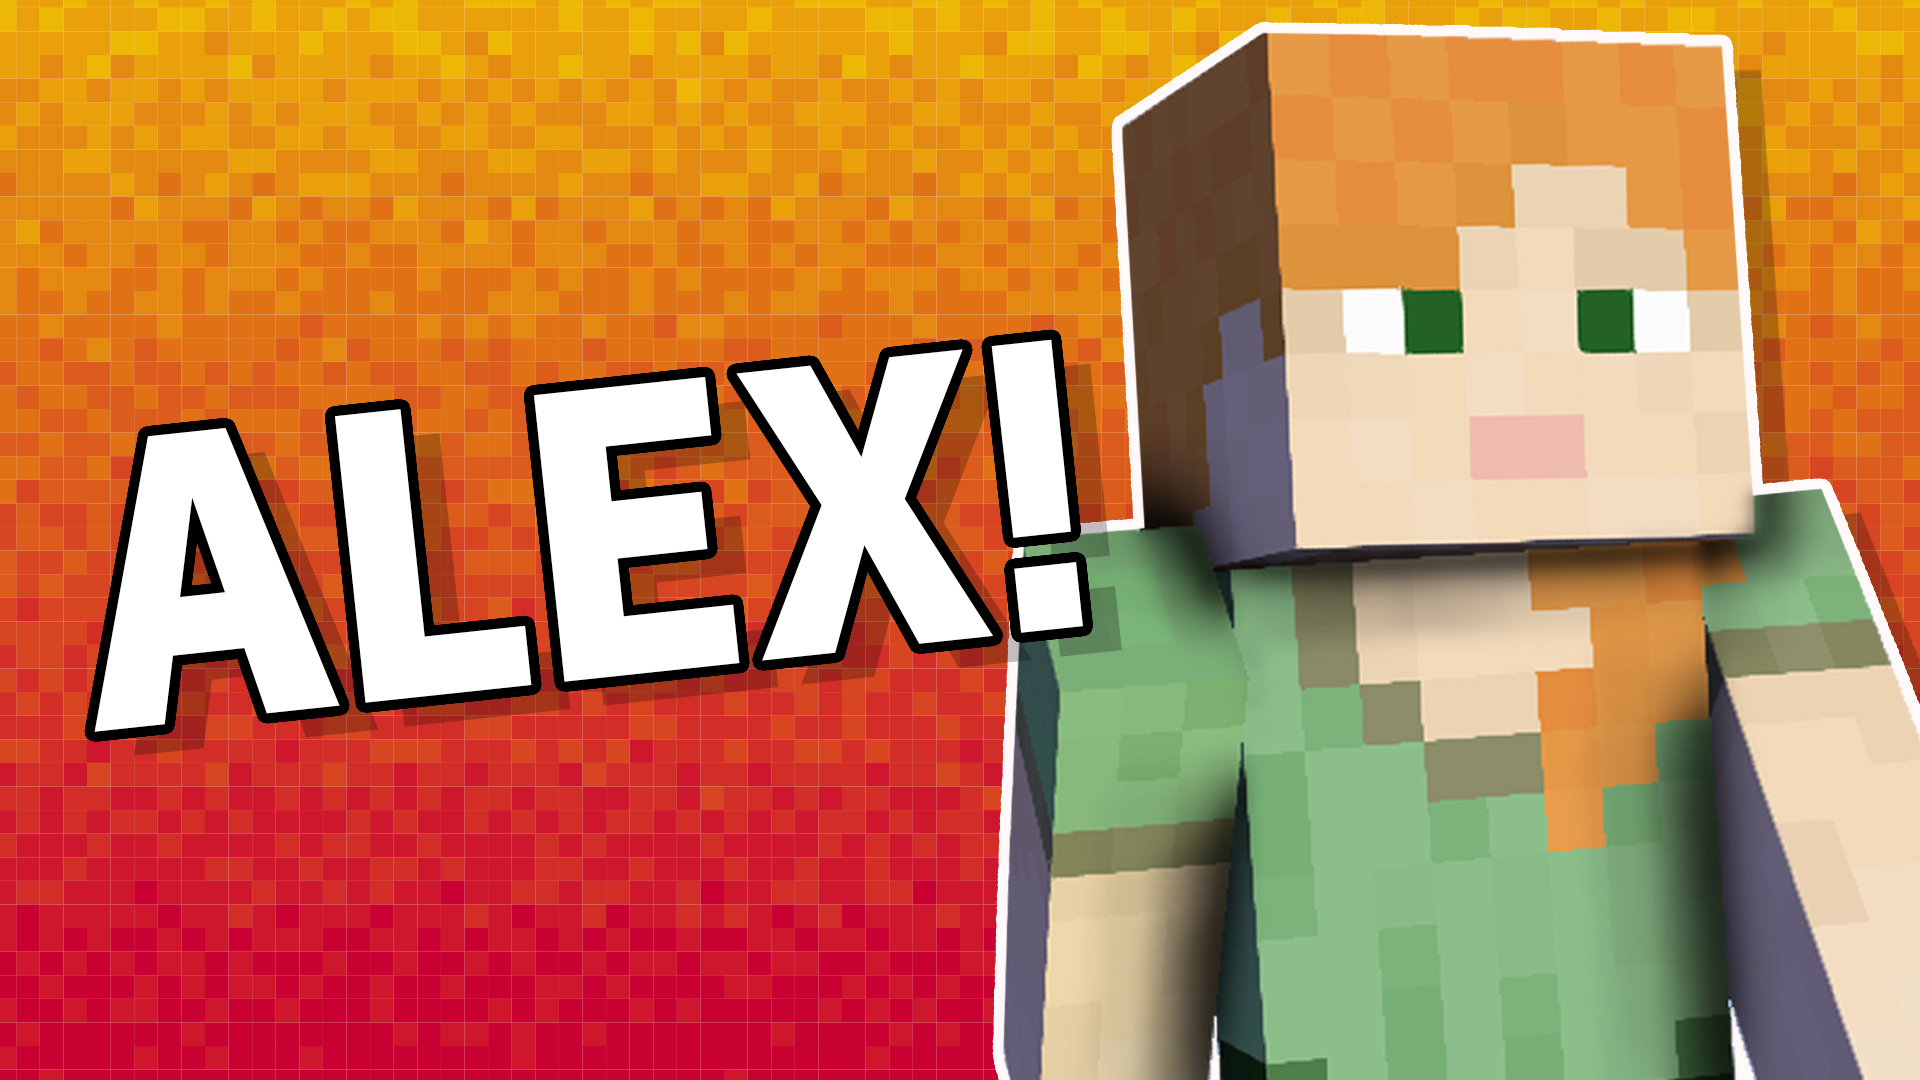 Alex from Minecraft